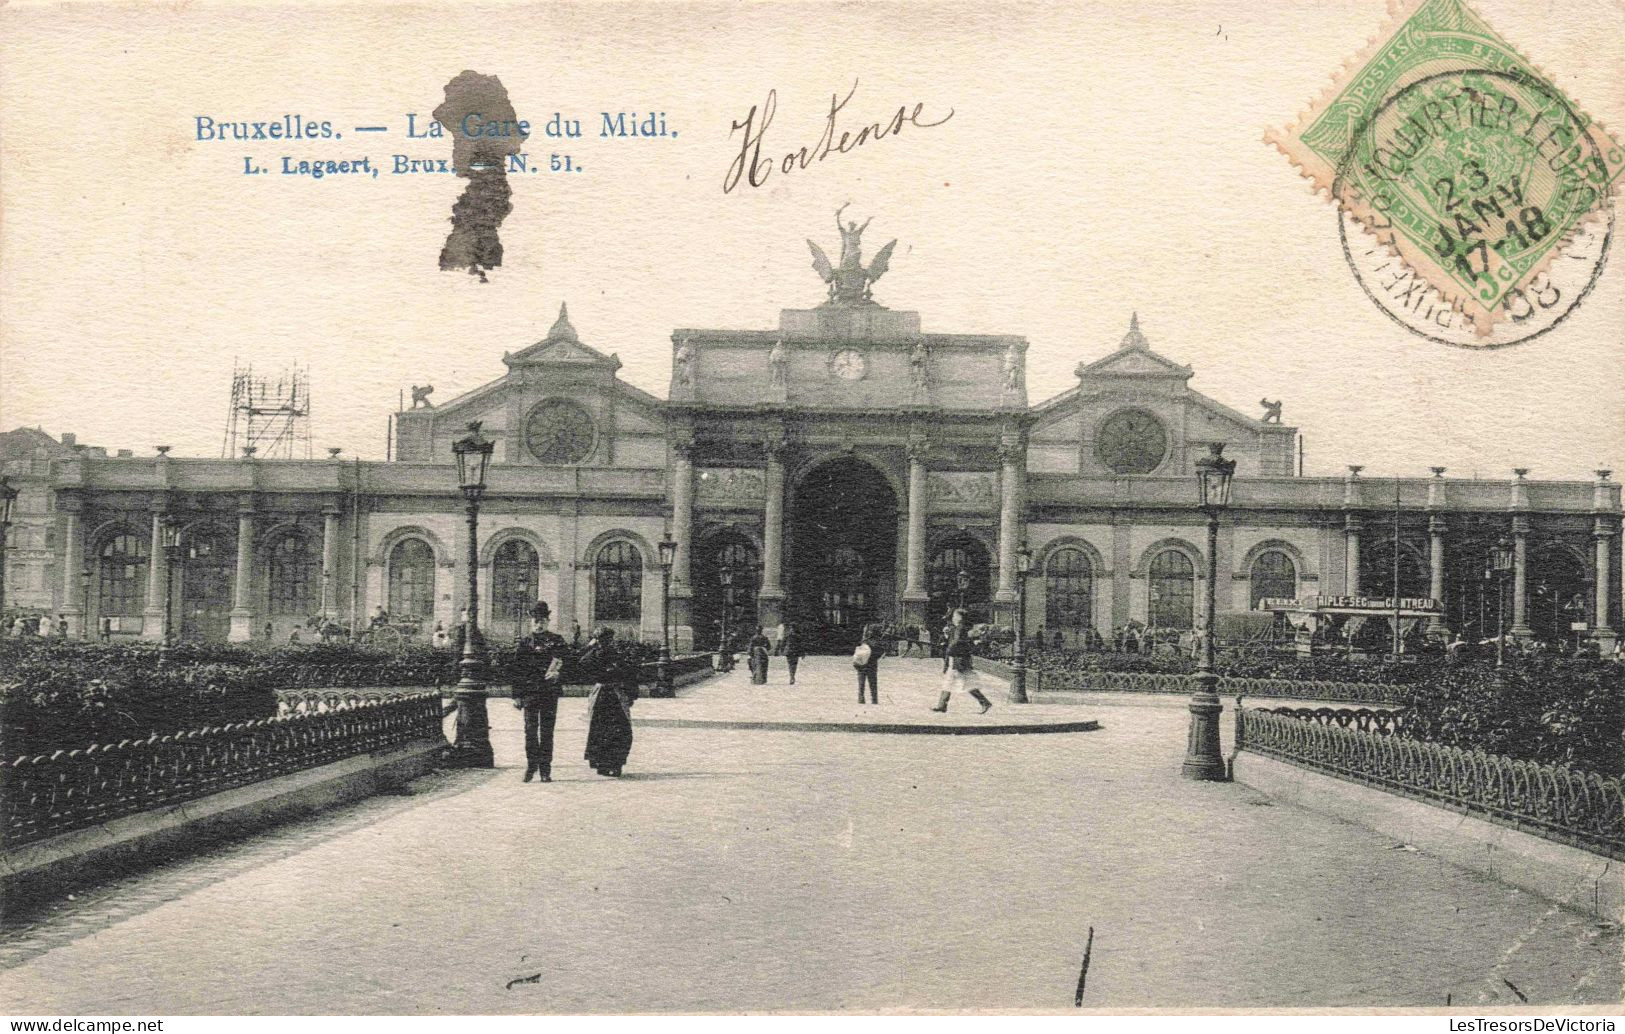 BELGIQUE - Bruxelles - La Gare Du Midi - Carte Postale Ancienne - Ferrovie, Stazioni